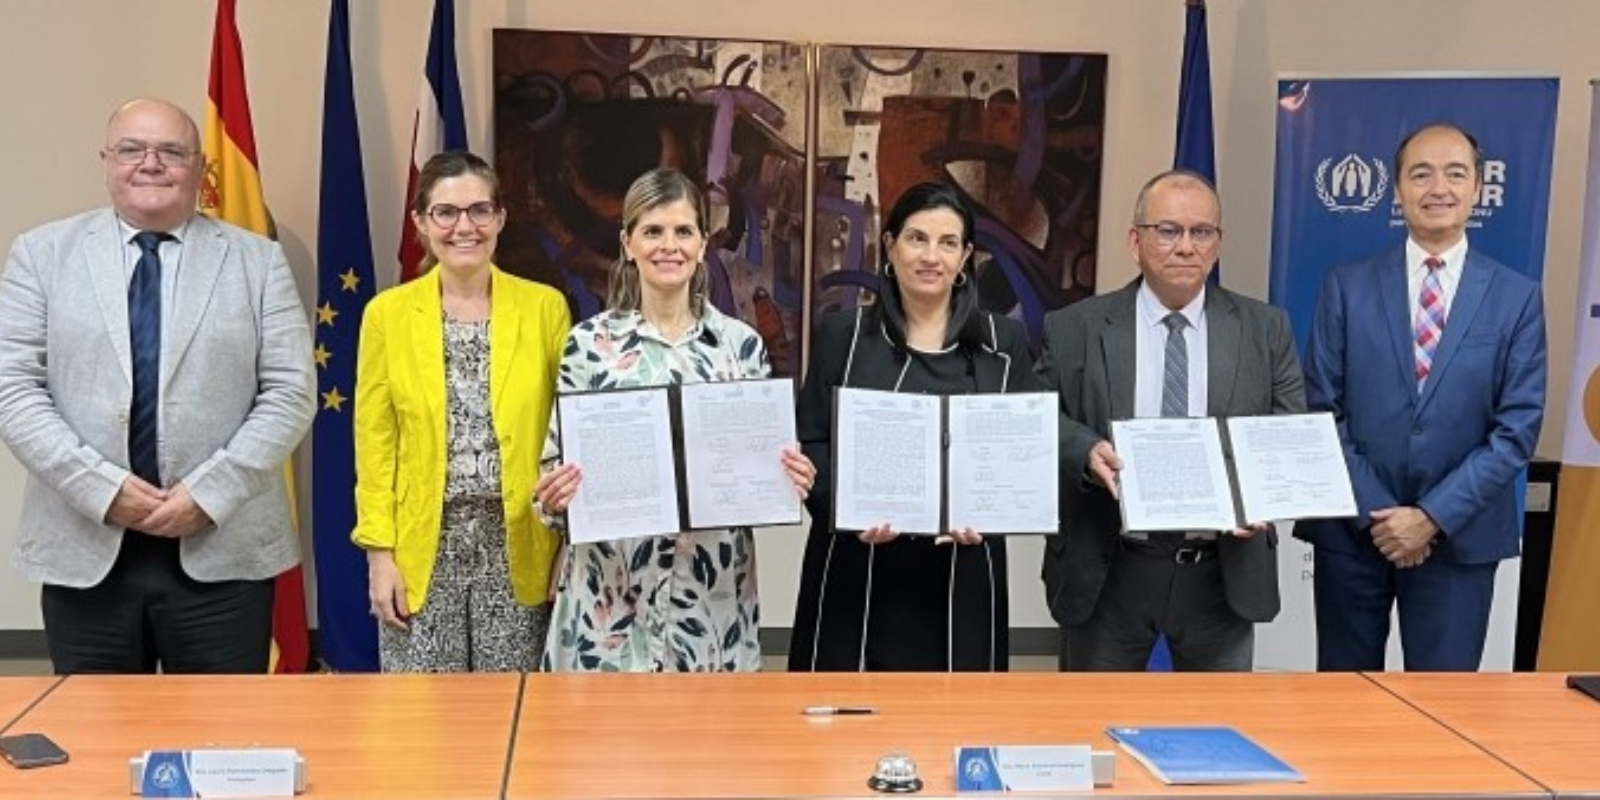 El pasado 29 de julio el Gobierno de Costa Rica firmó un nuevo convienio de aseguramiento para solicitantes de refugio junto a la Caja Costarricense de Seguro Social y la Agencia de las Naciones Unidas para los Refugiados